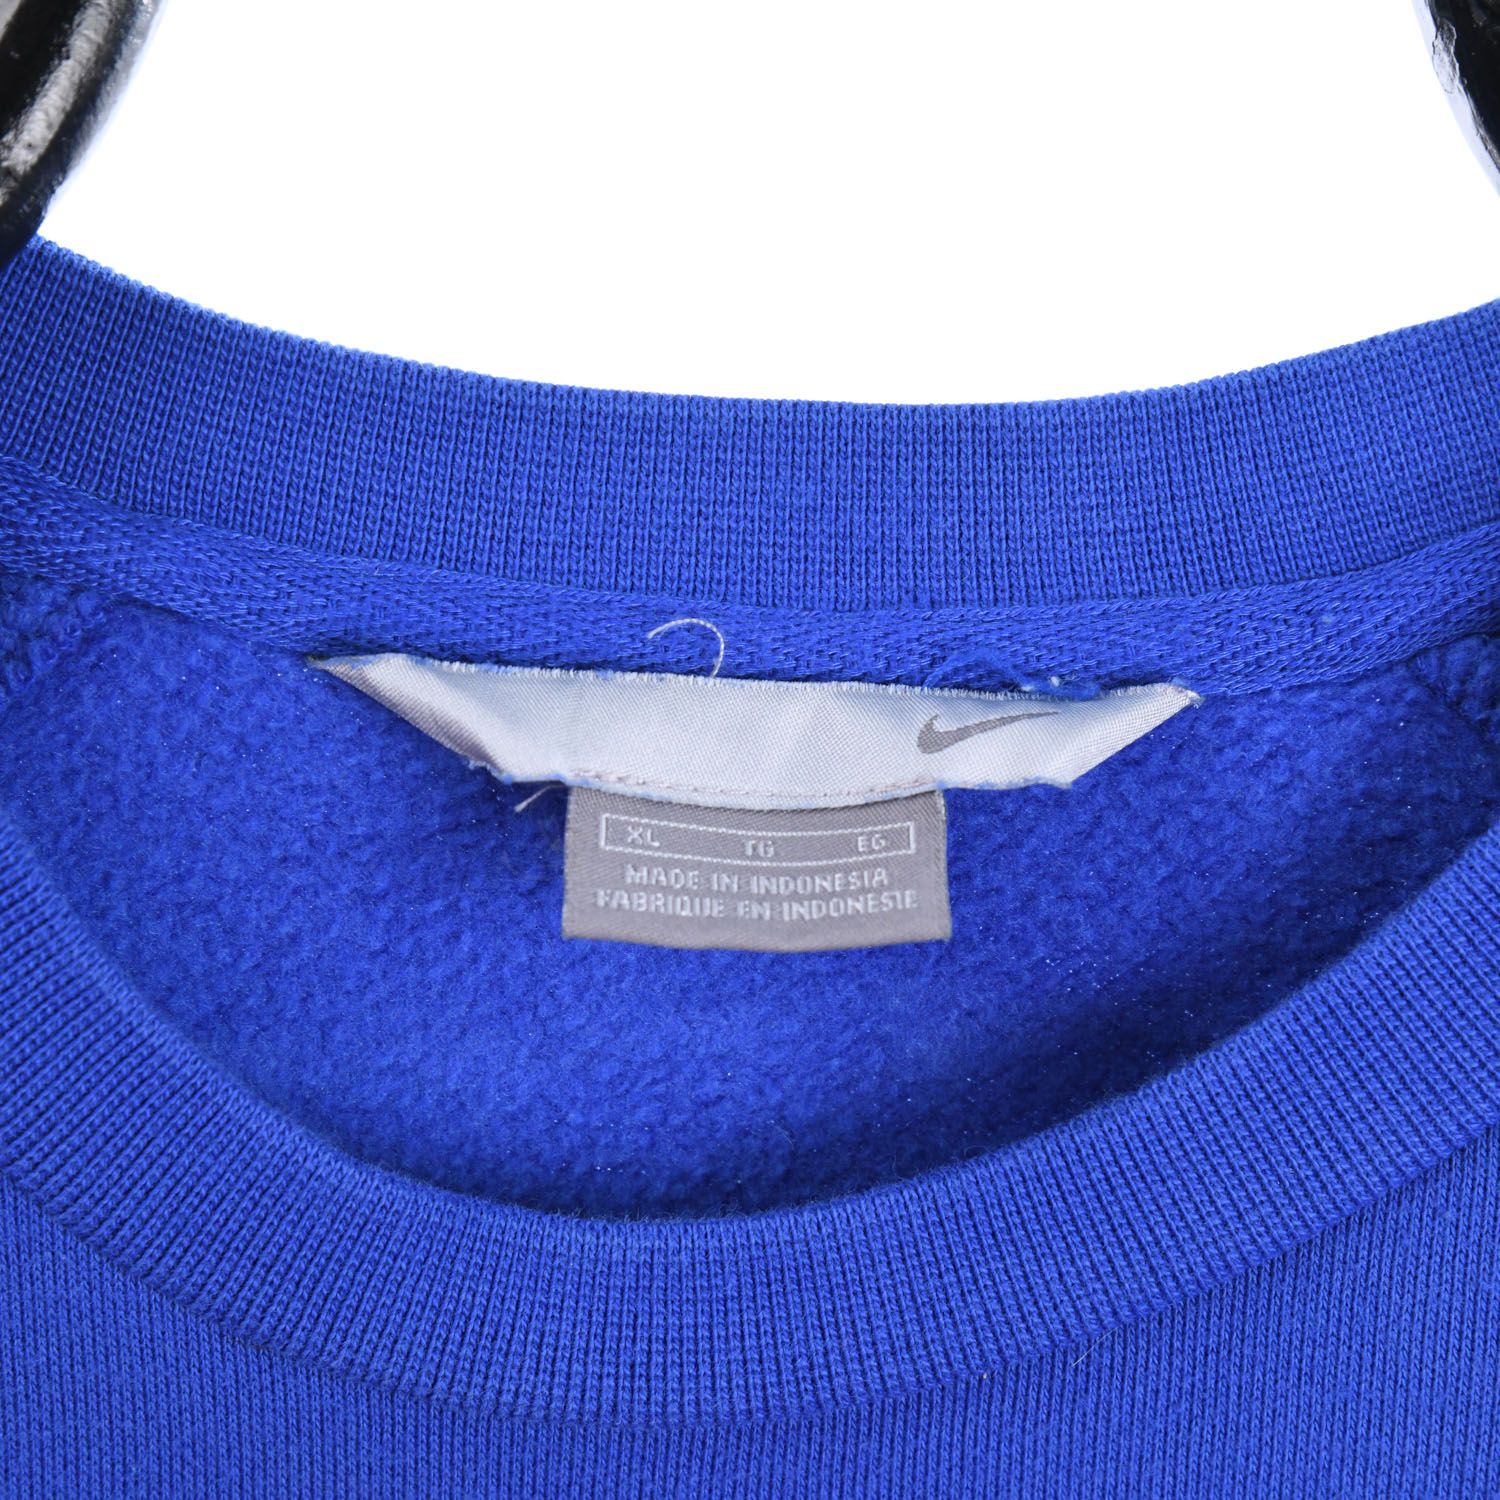 Nike Early 2000s Sweatshirt